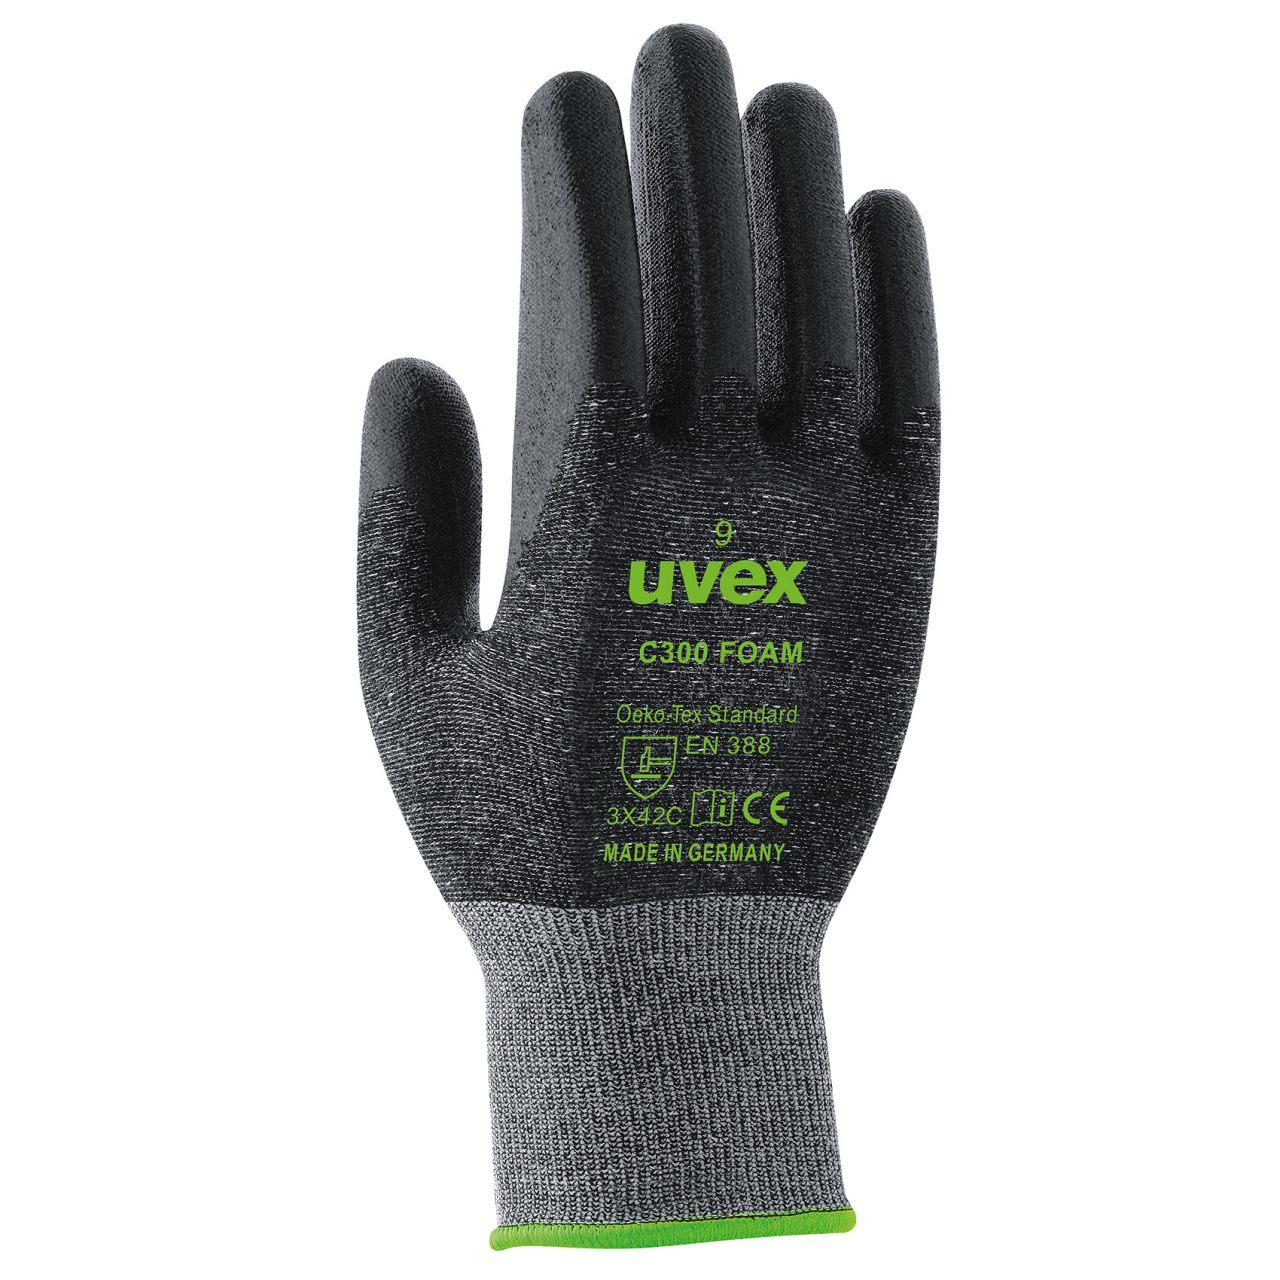 Защитные перчатки uvex C300 фом